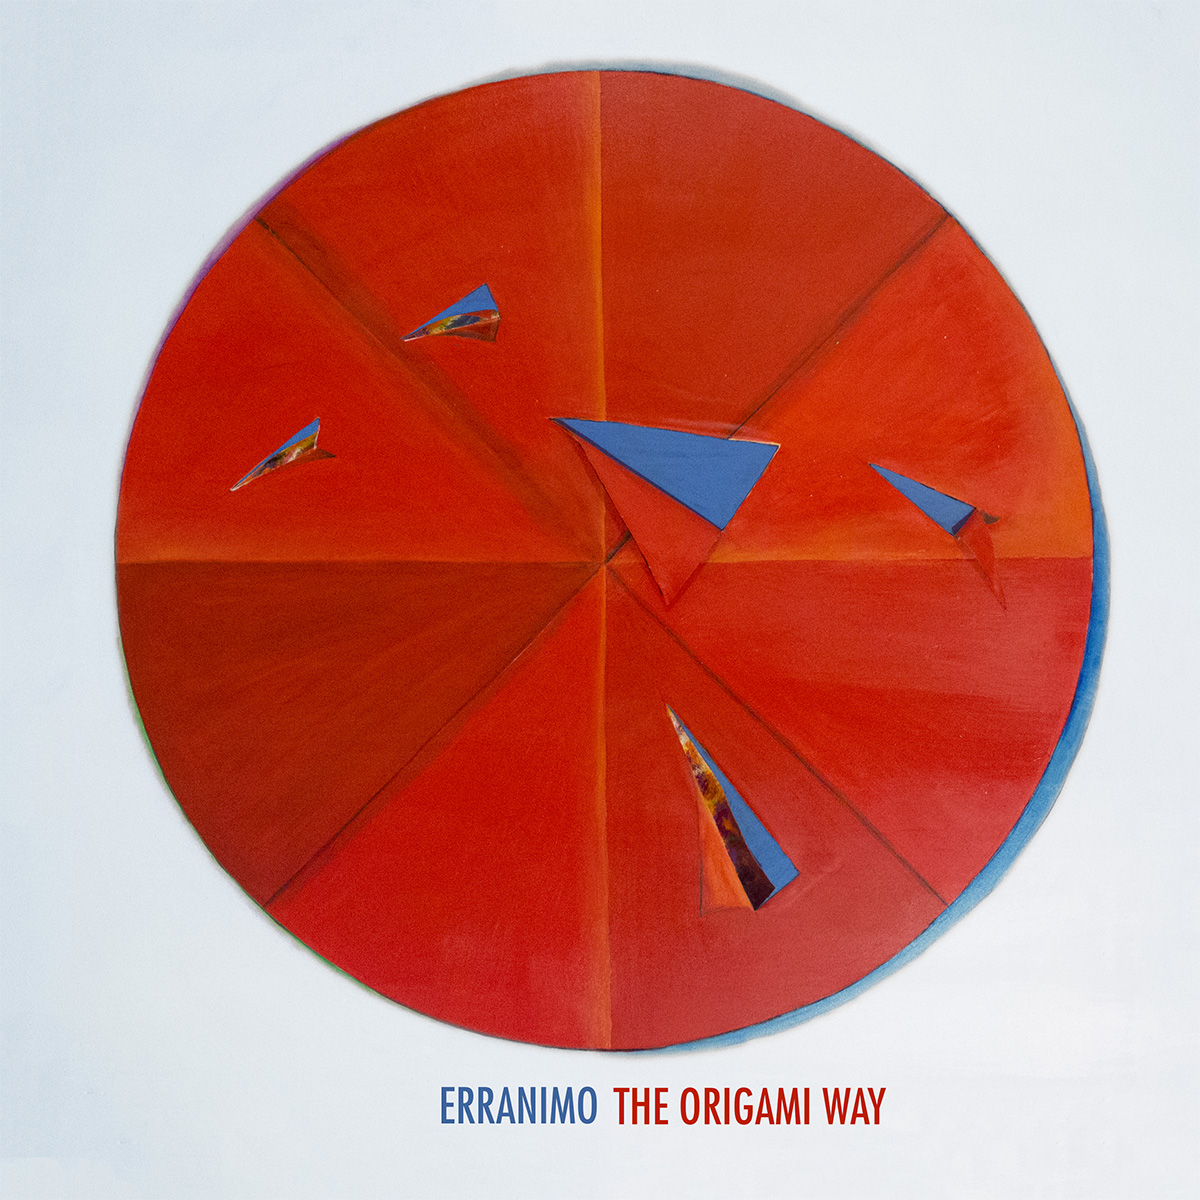 Scopri di più sull'articolo “The Origami Way”, il disco di Erranimo